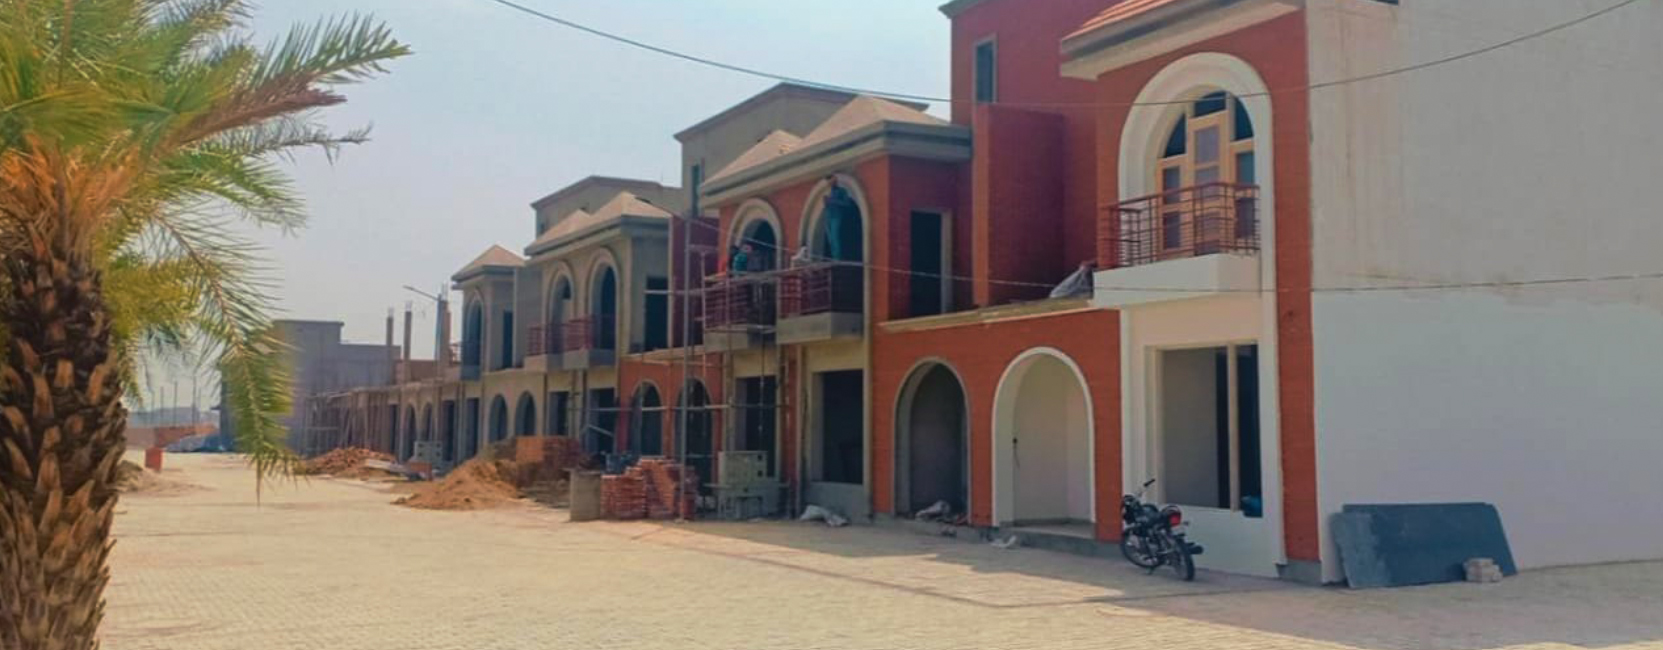 3 bhk luxury duplex villas in kharar